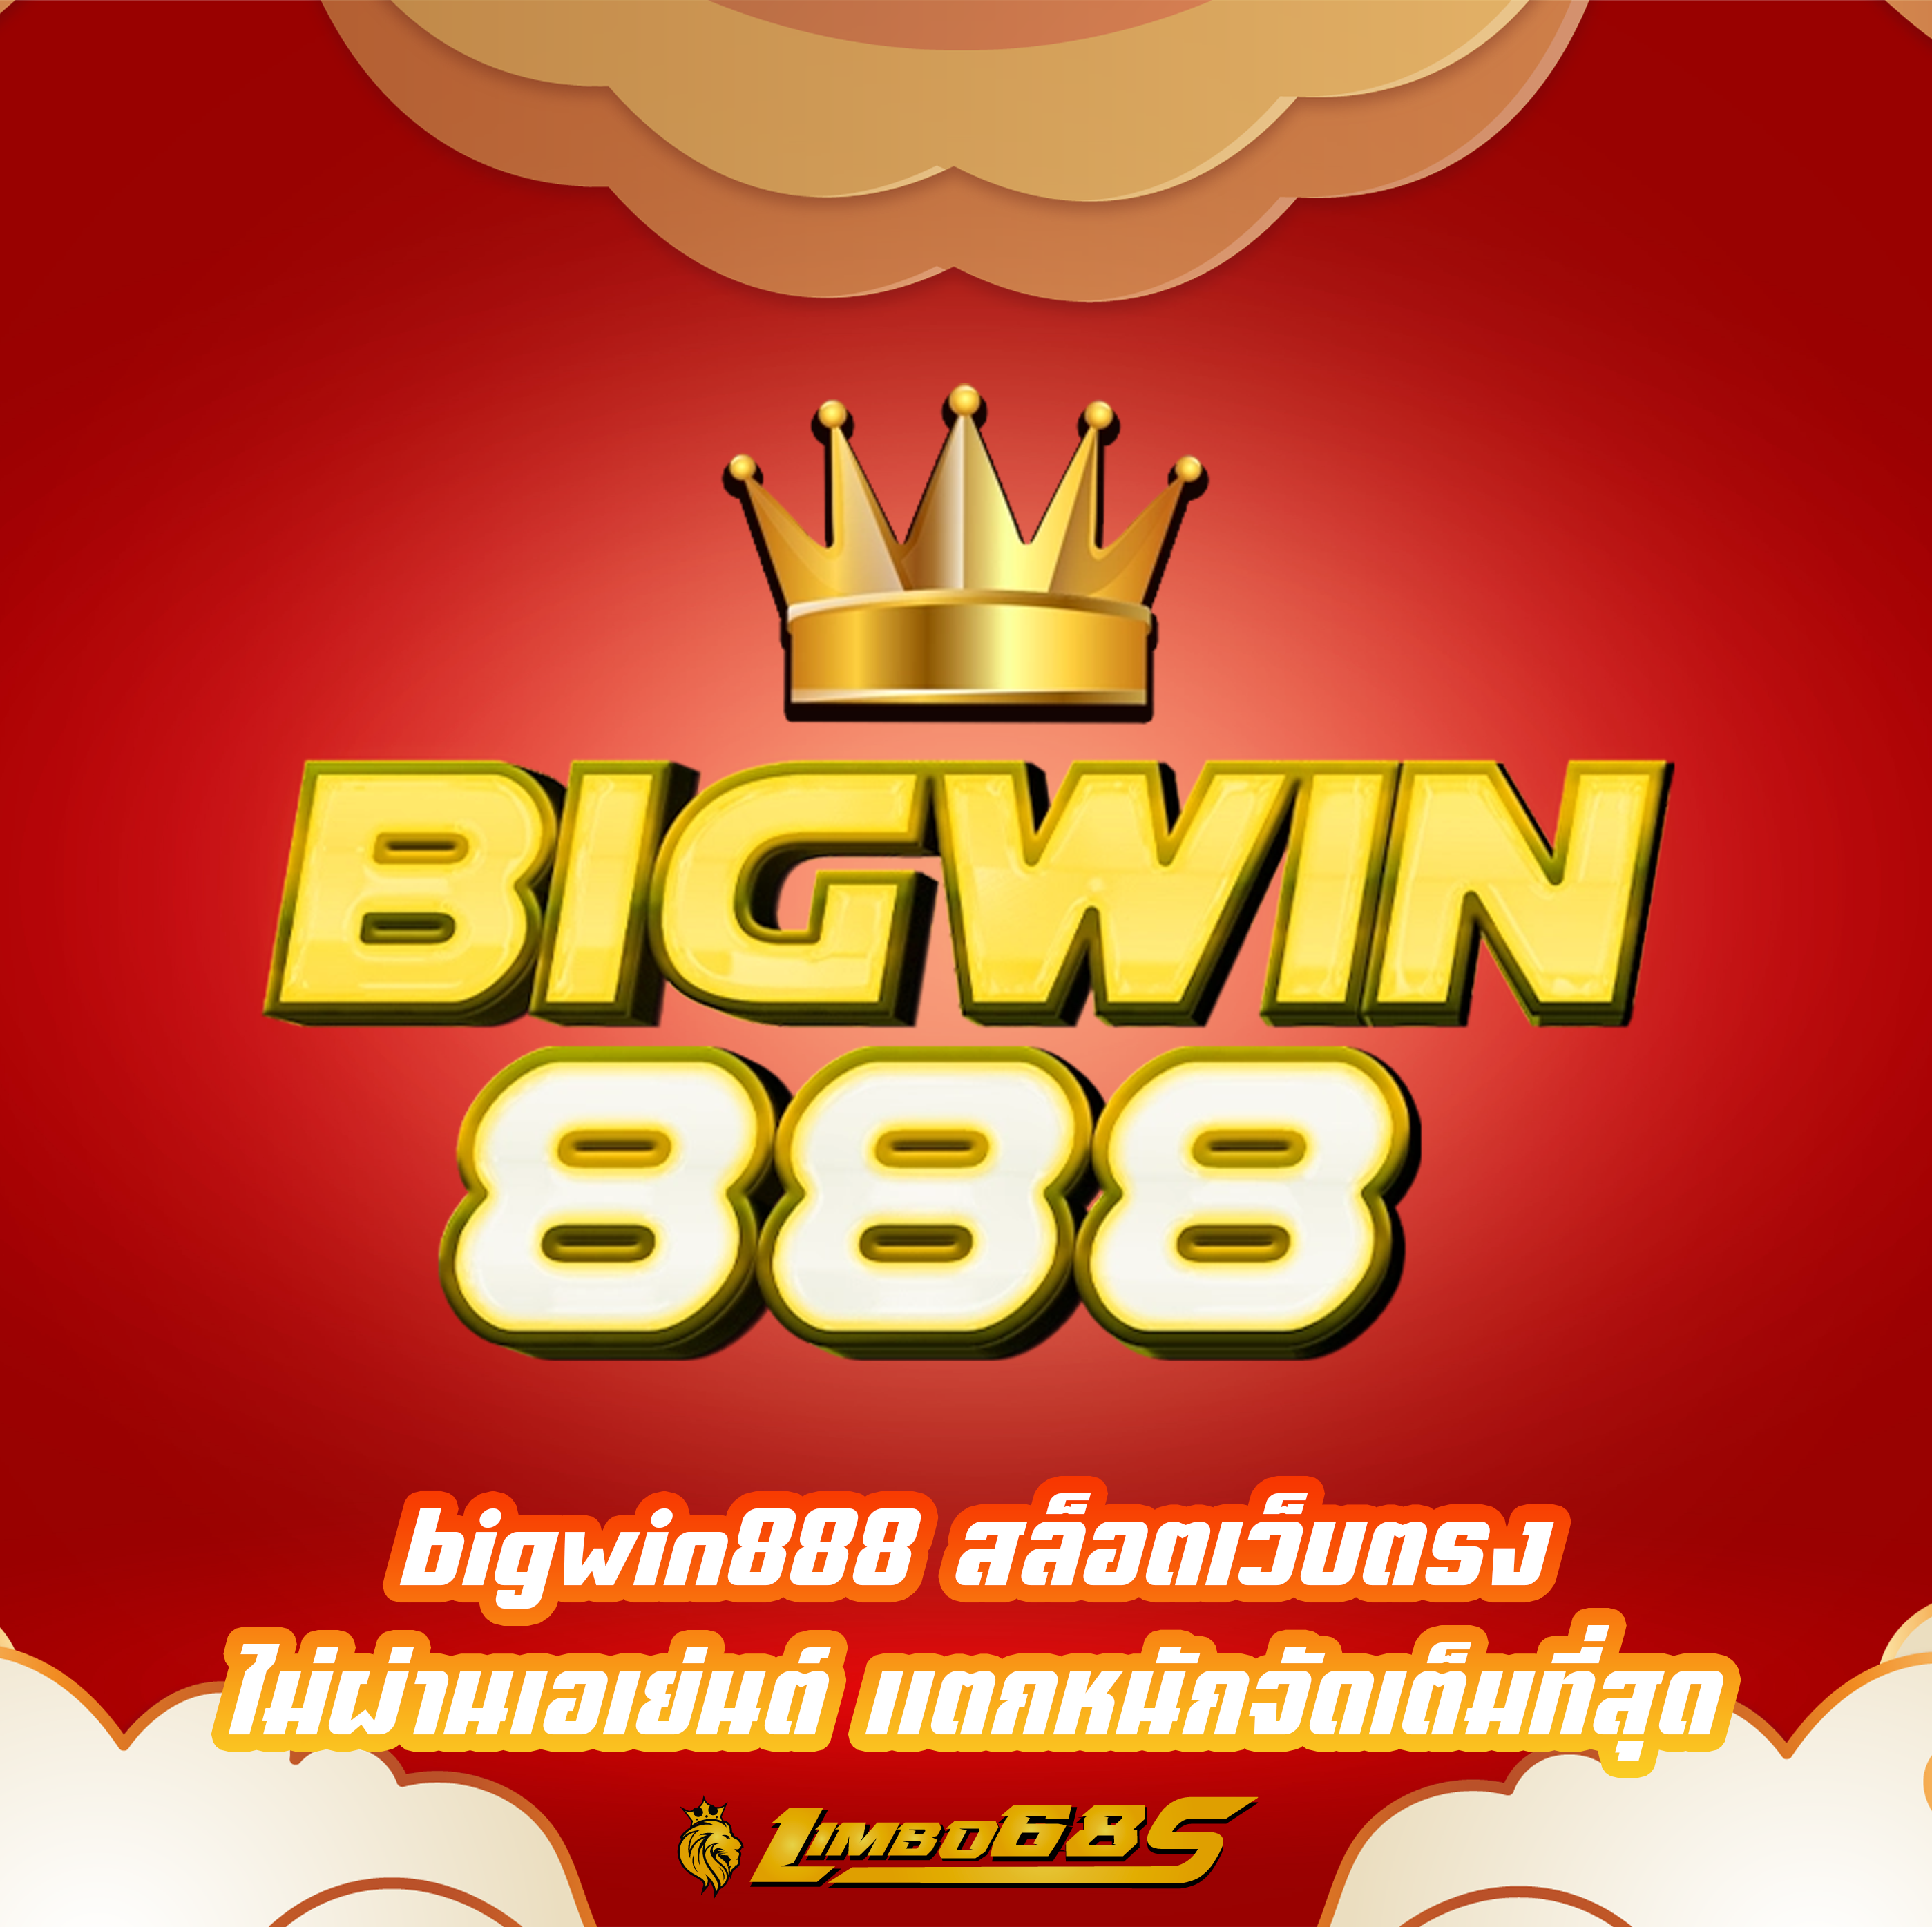 bigwin888